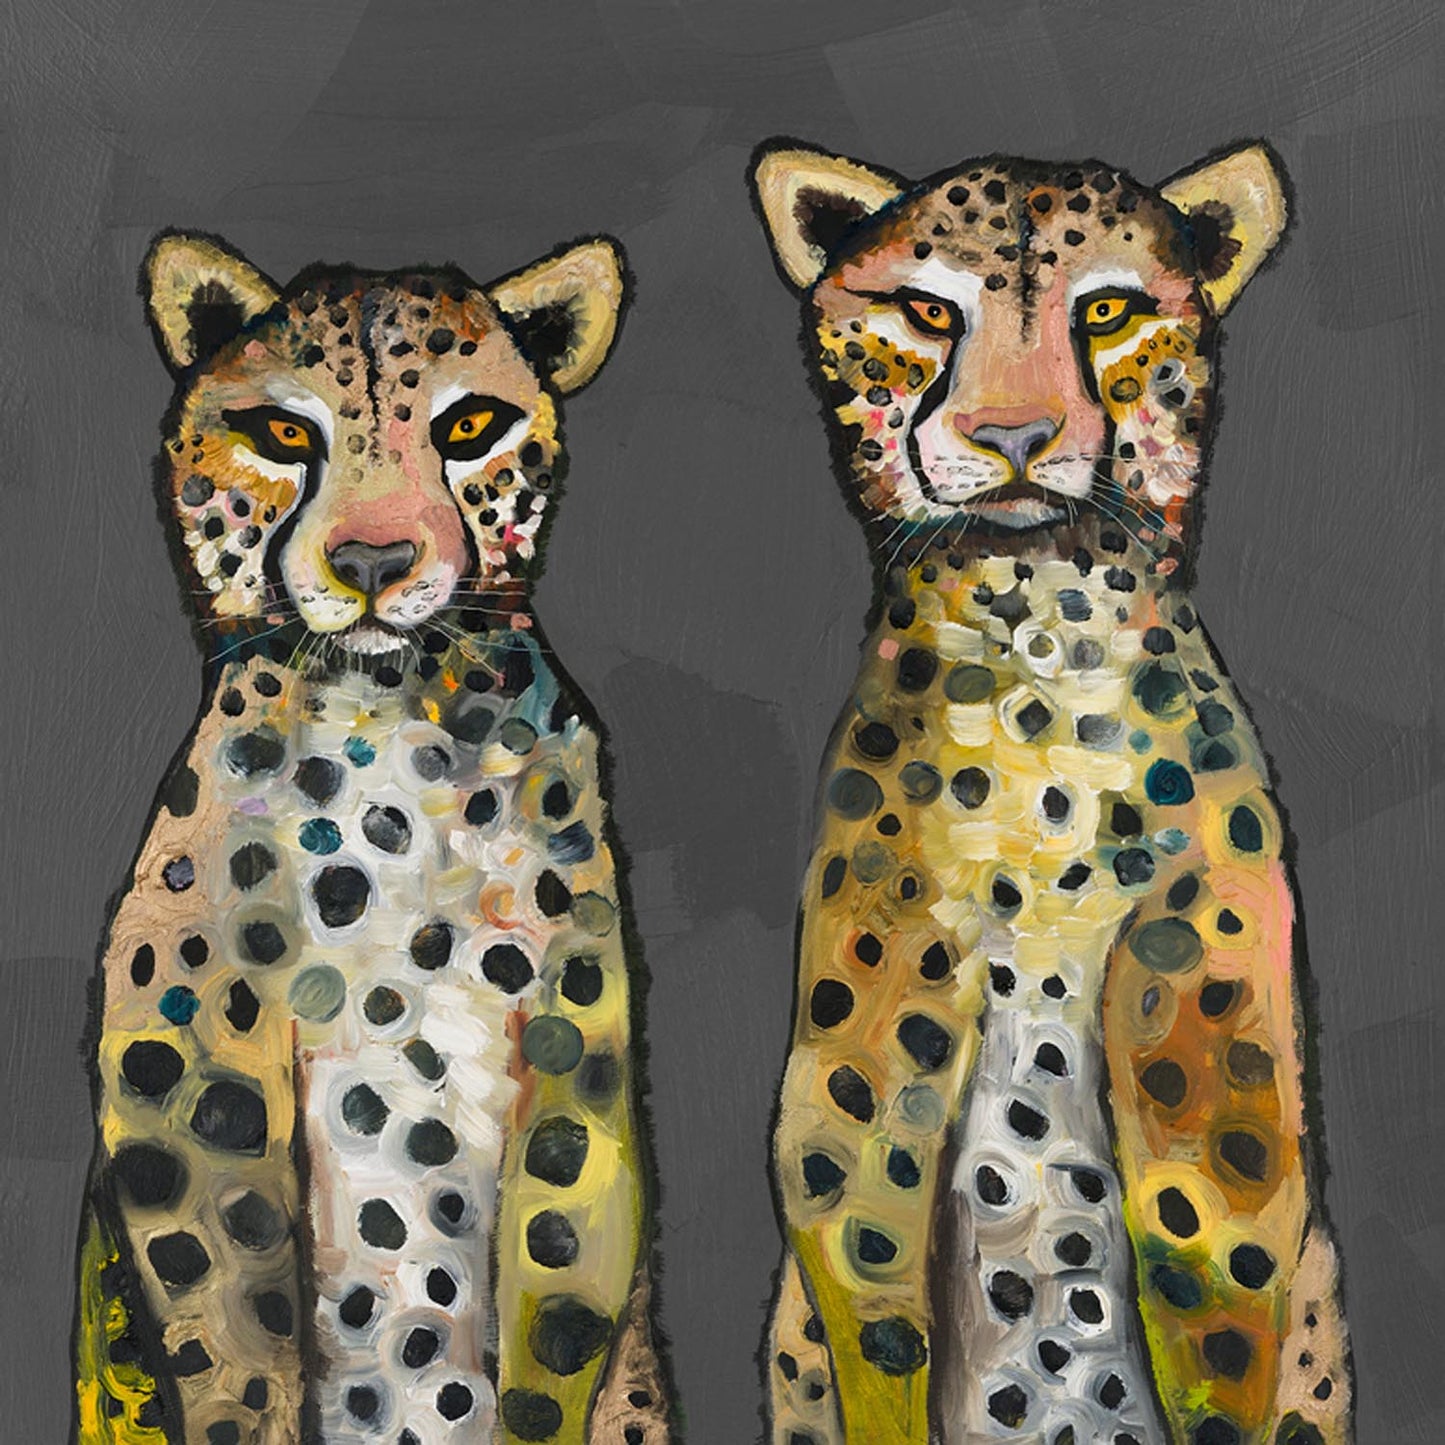 Two Wild Cheetahs Canvas Wall Art